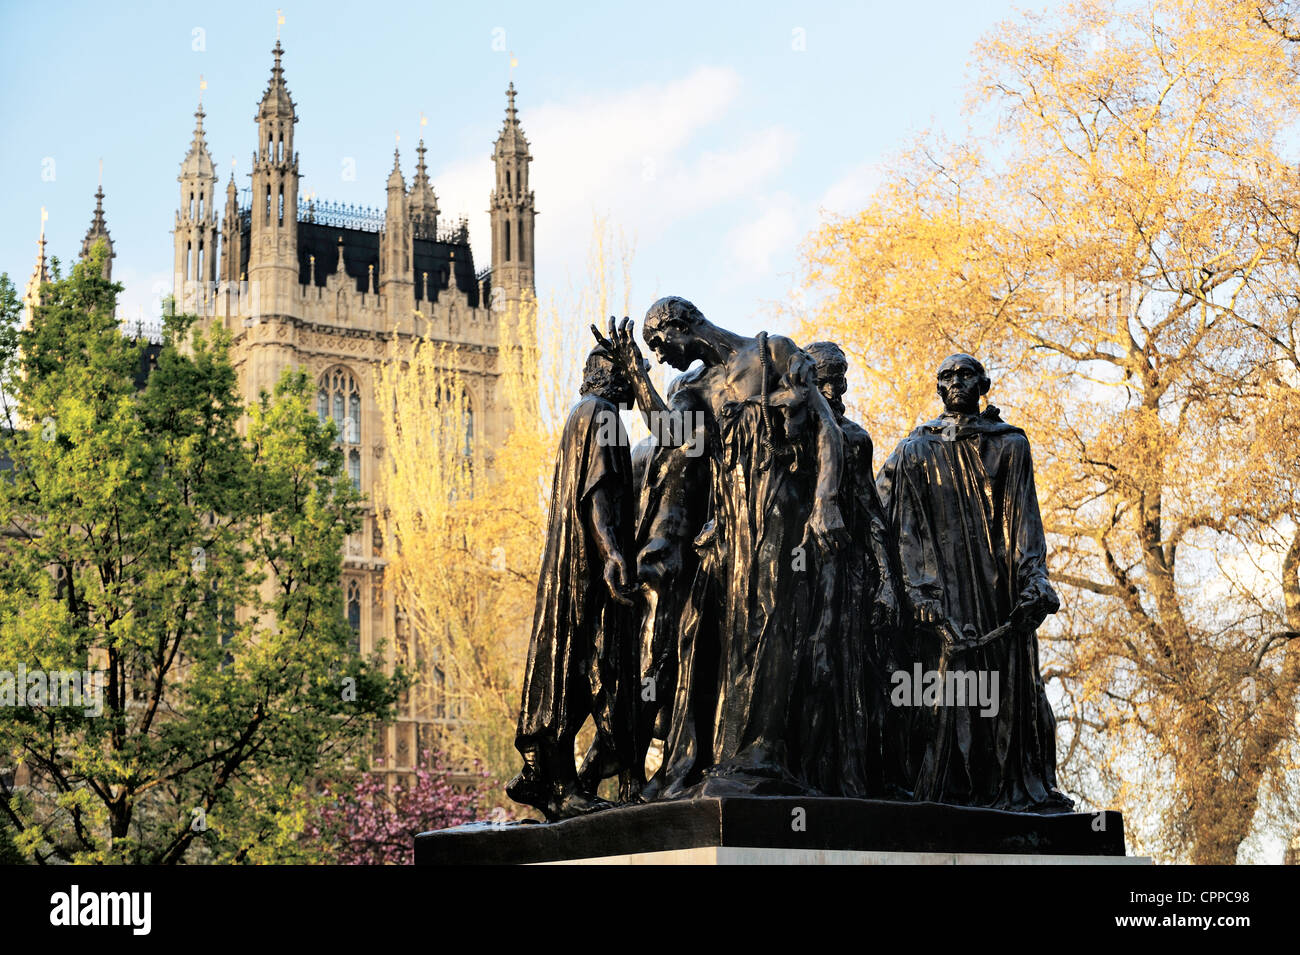 Die Bürger von Calais. Statue von Rodin in Victoria Tower Gardens, Westminster, London. Folge zeigt des Hundertjährigen Krieges Stockfoto